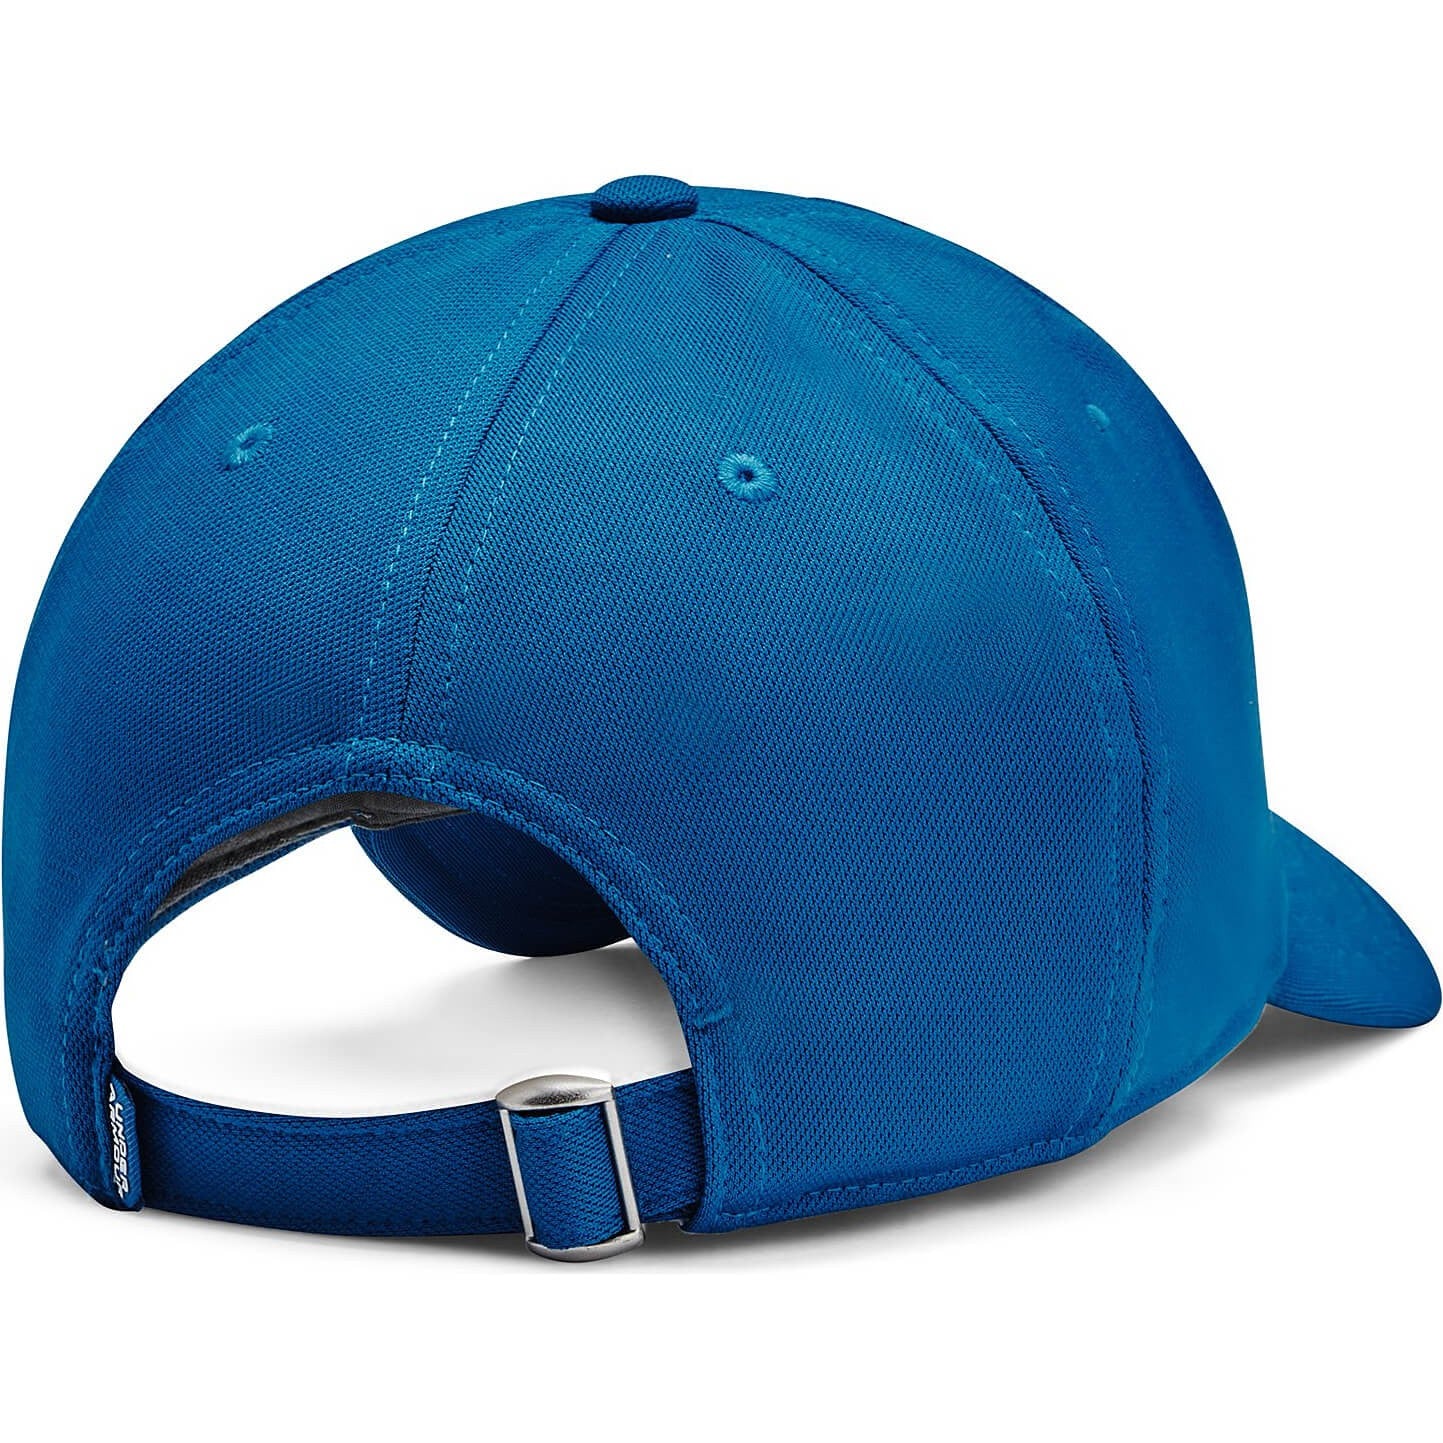 Under Armour Men's Blitzing Adjustable Hat Blue